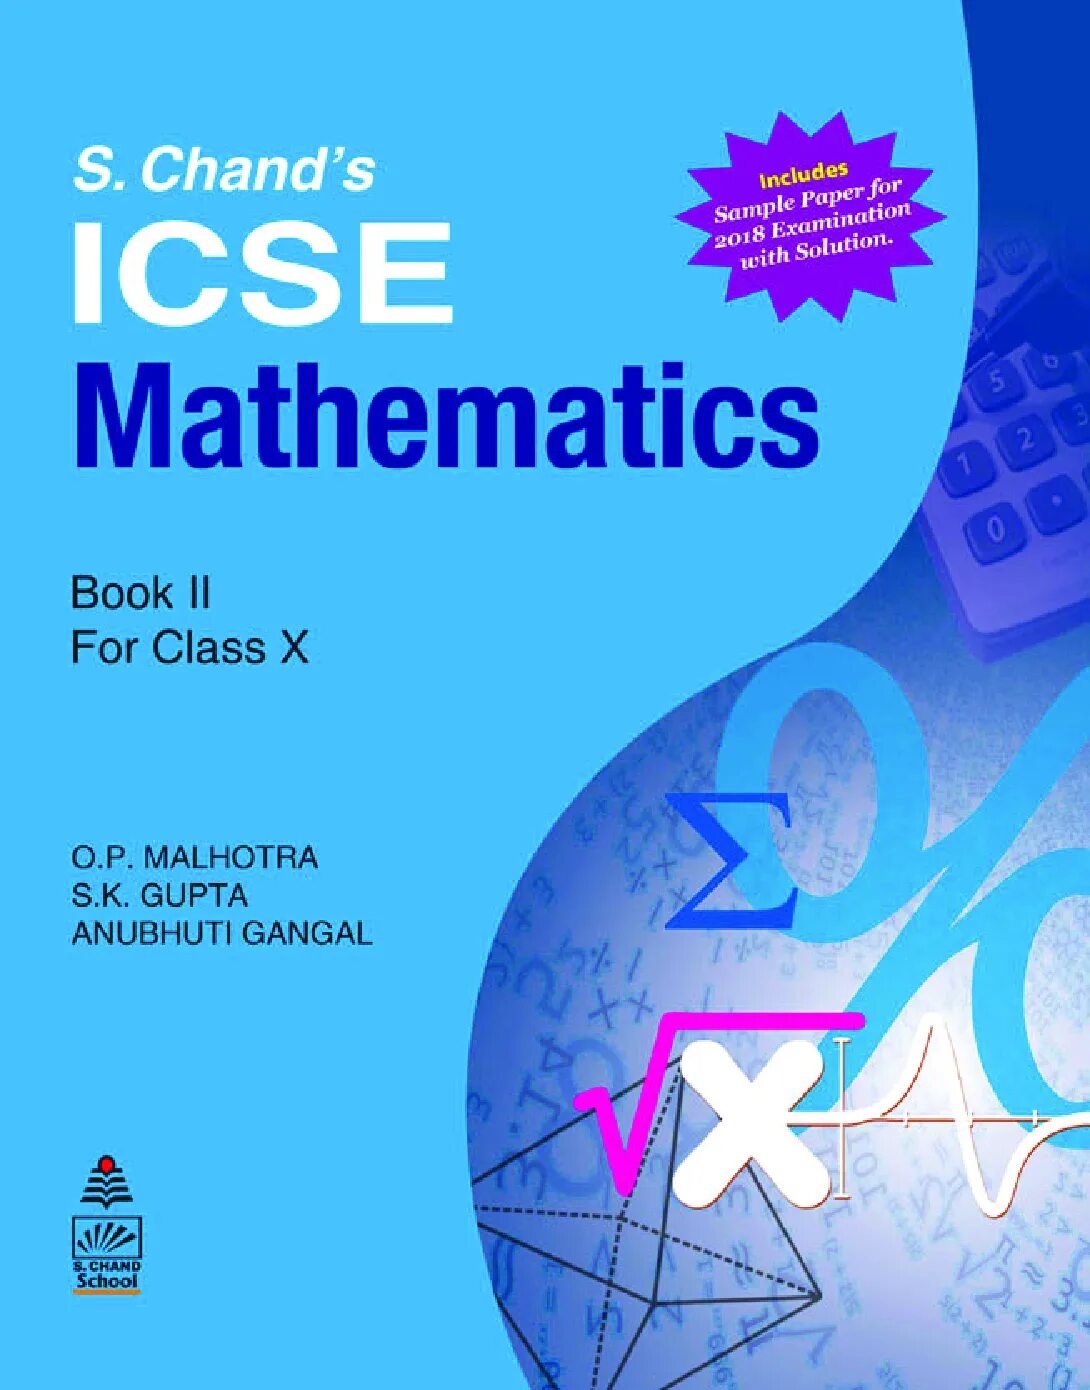 Pdf mathematics. Math учебник. Matematika обложка. English Math books. Math book.